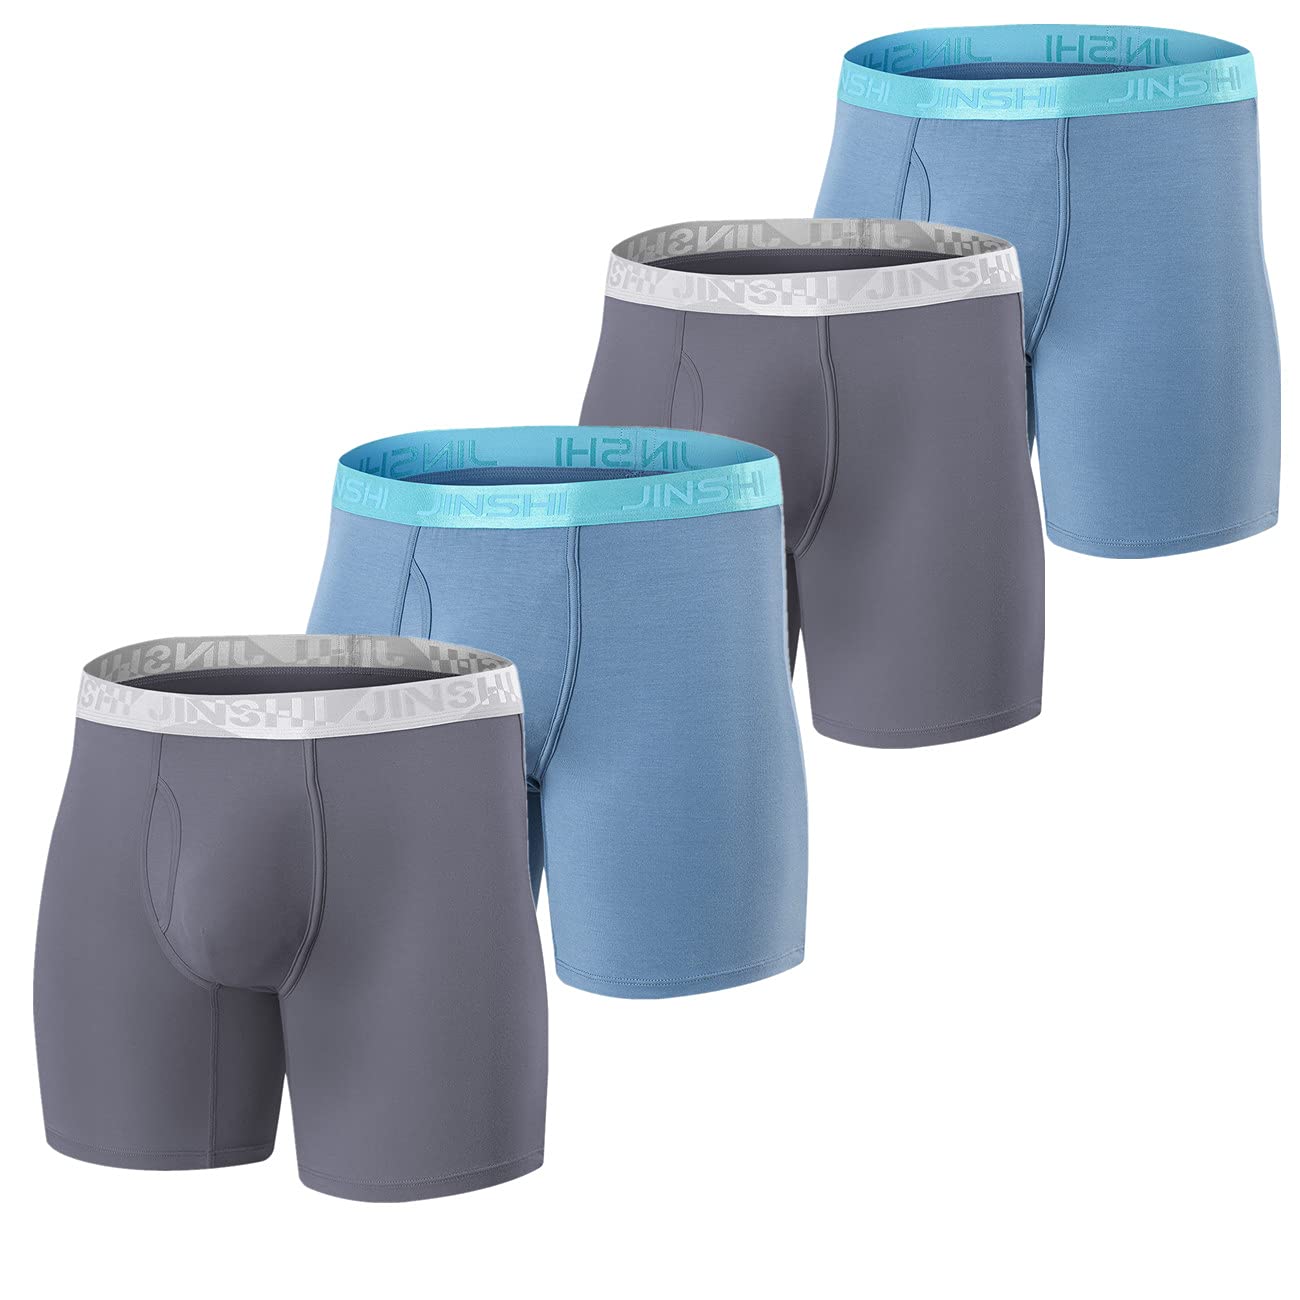 Ouruikia Men's Trunks Underwear Breathable Modal Trunks Underwear